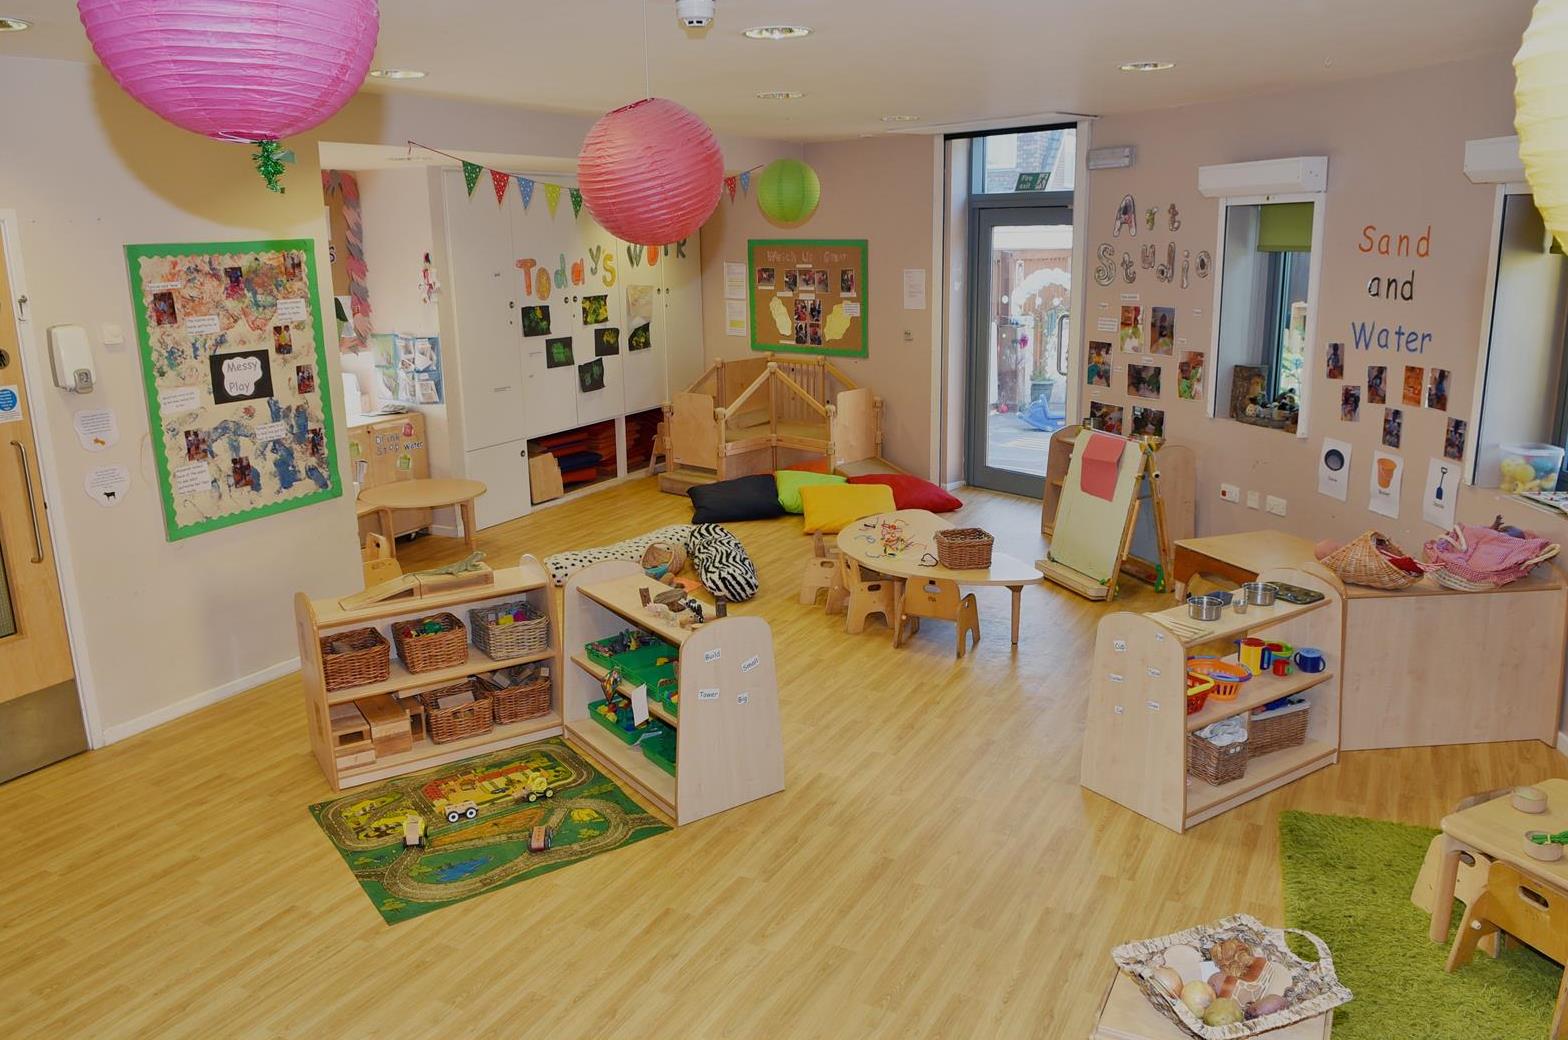 Bright Horizons Trafford Nursery and Preschool Old Trafford 03334 551321